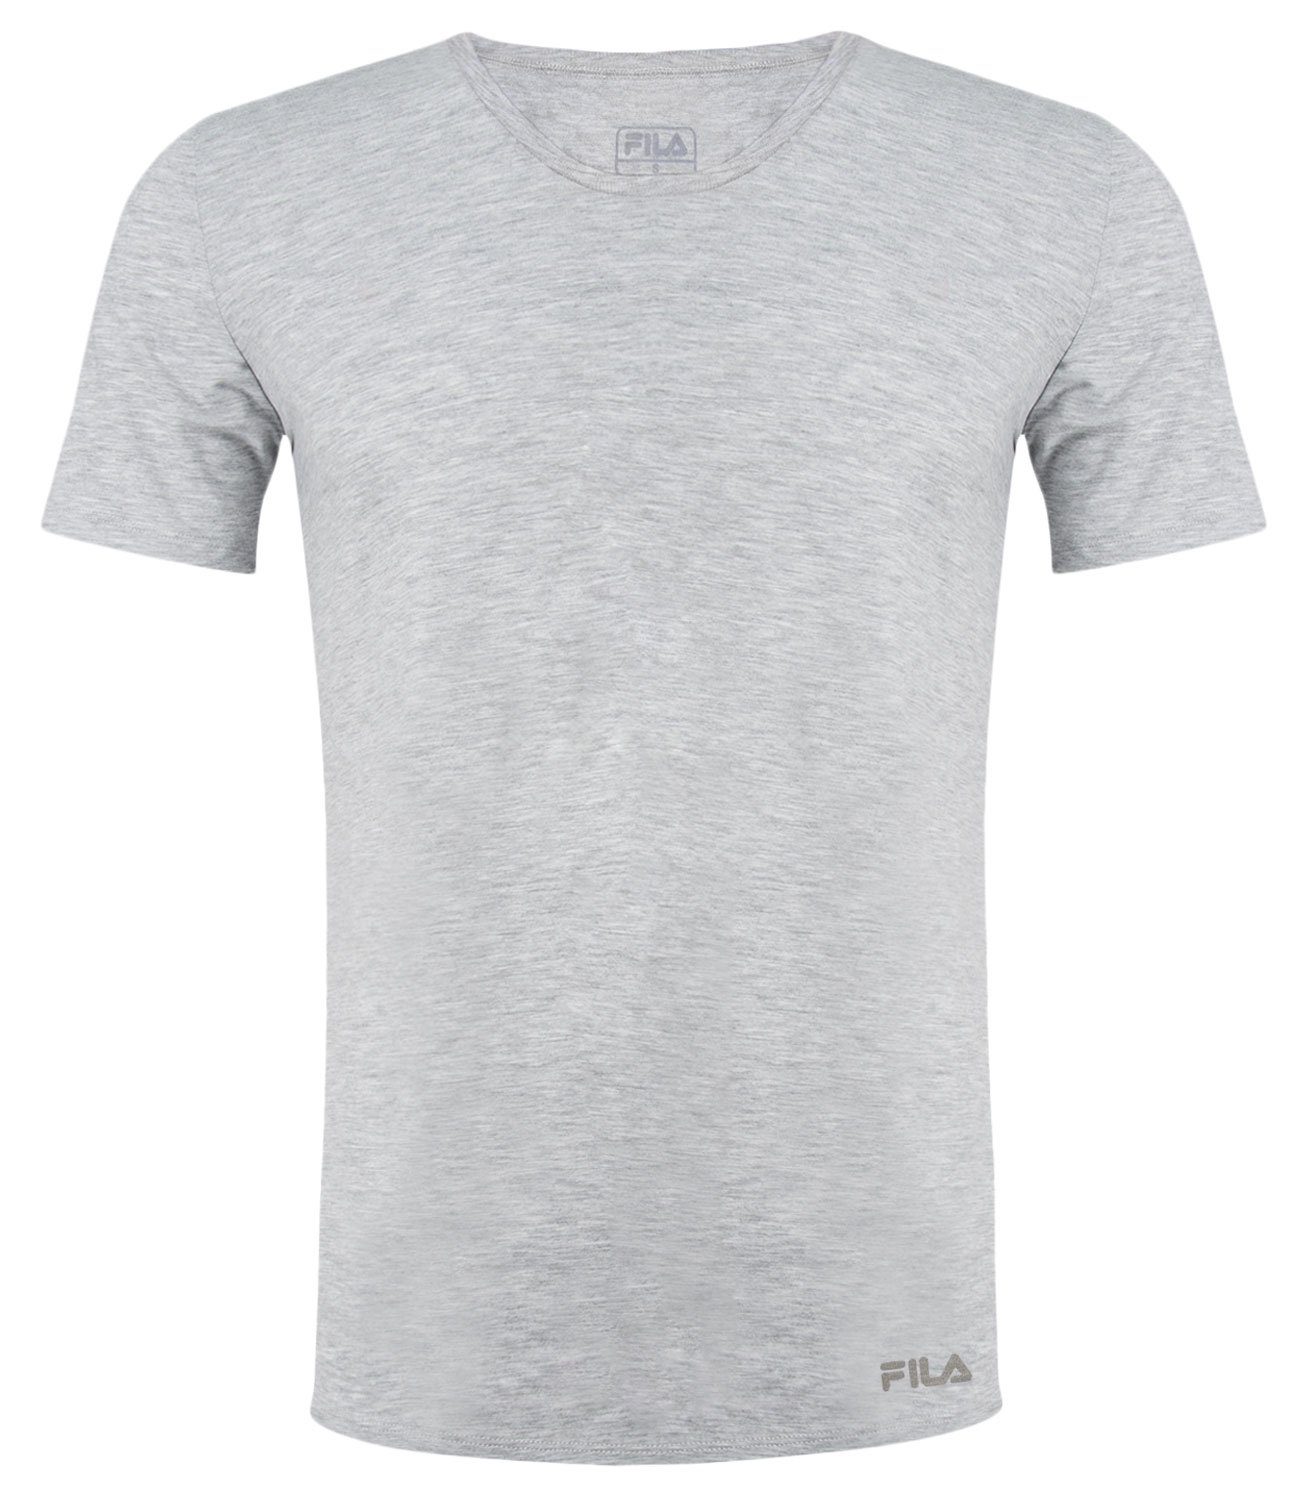 Fila T-Shirt Round-Neck 400 grey Baumwolljersey weichem aus